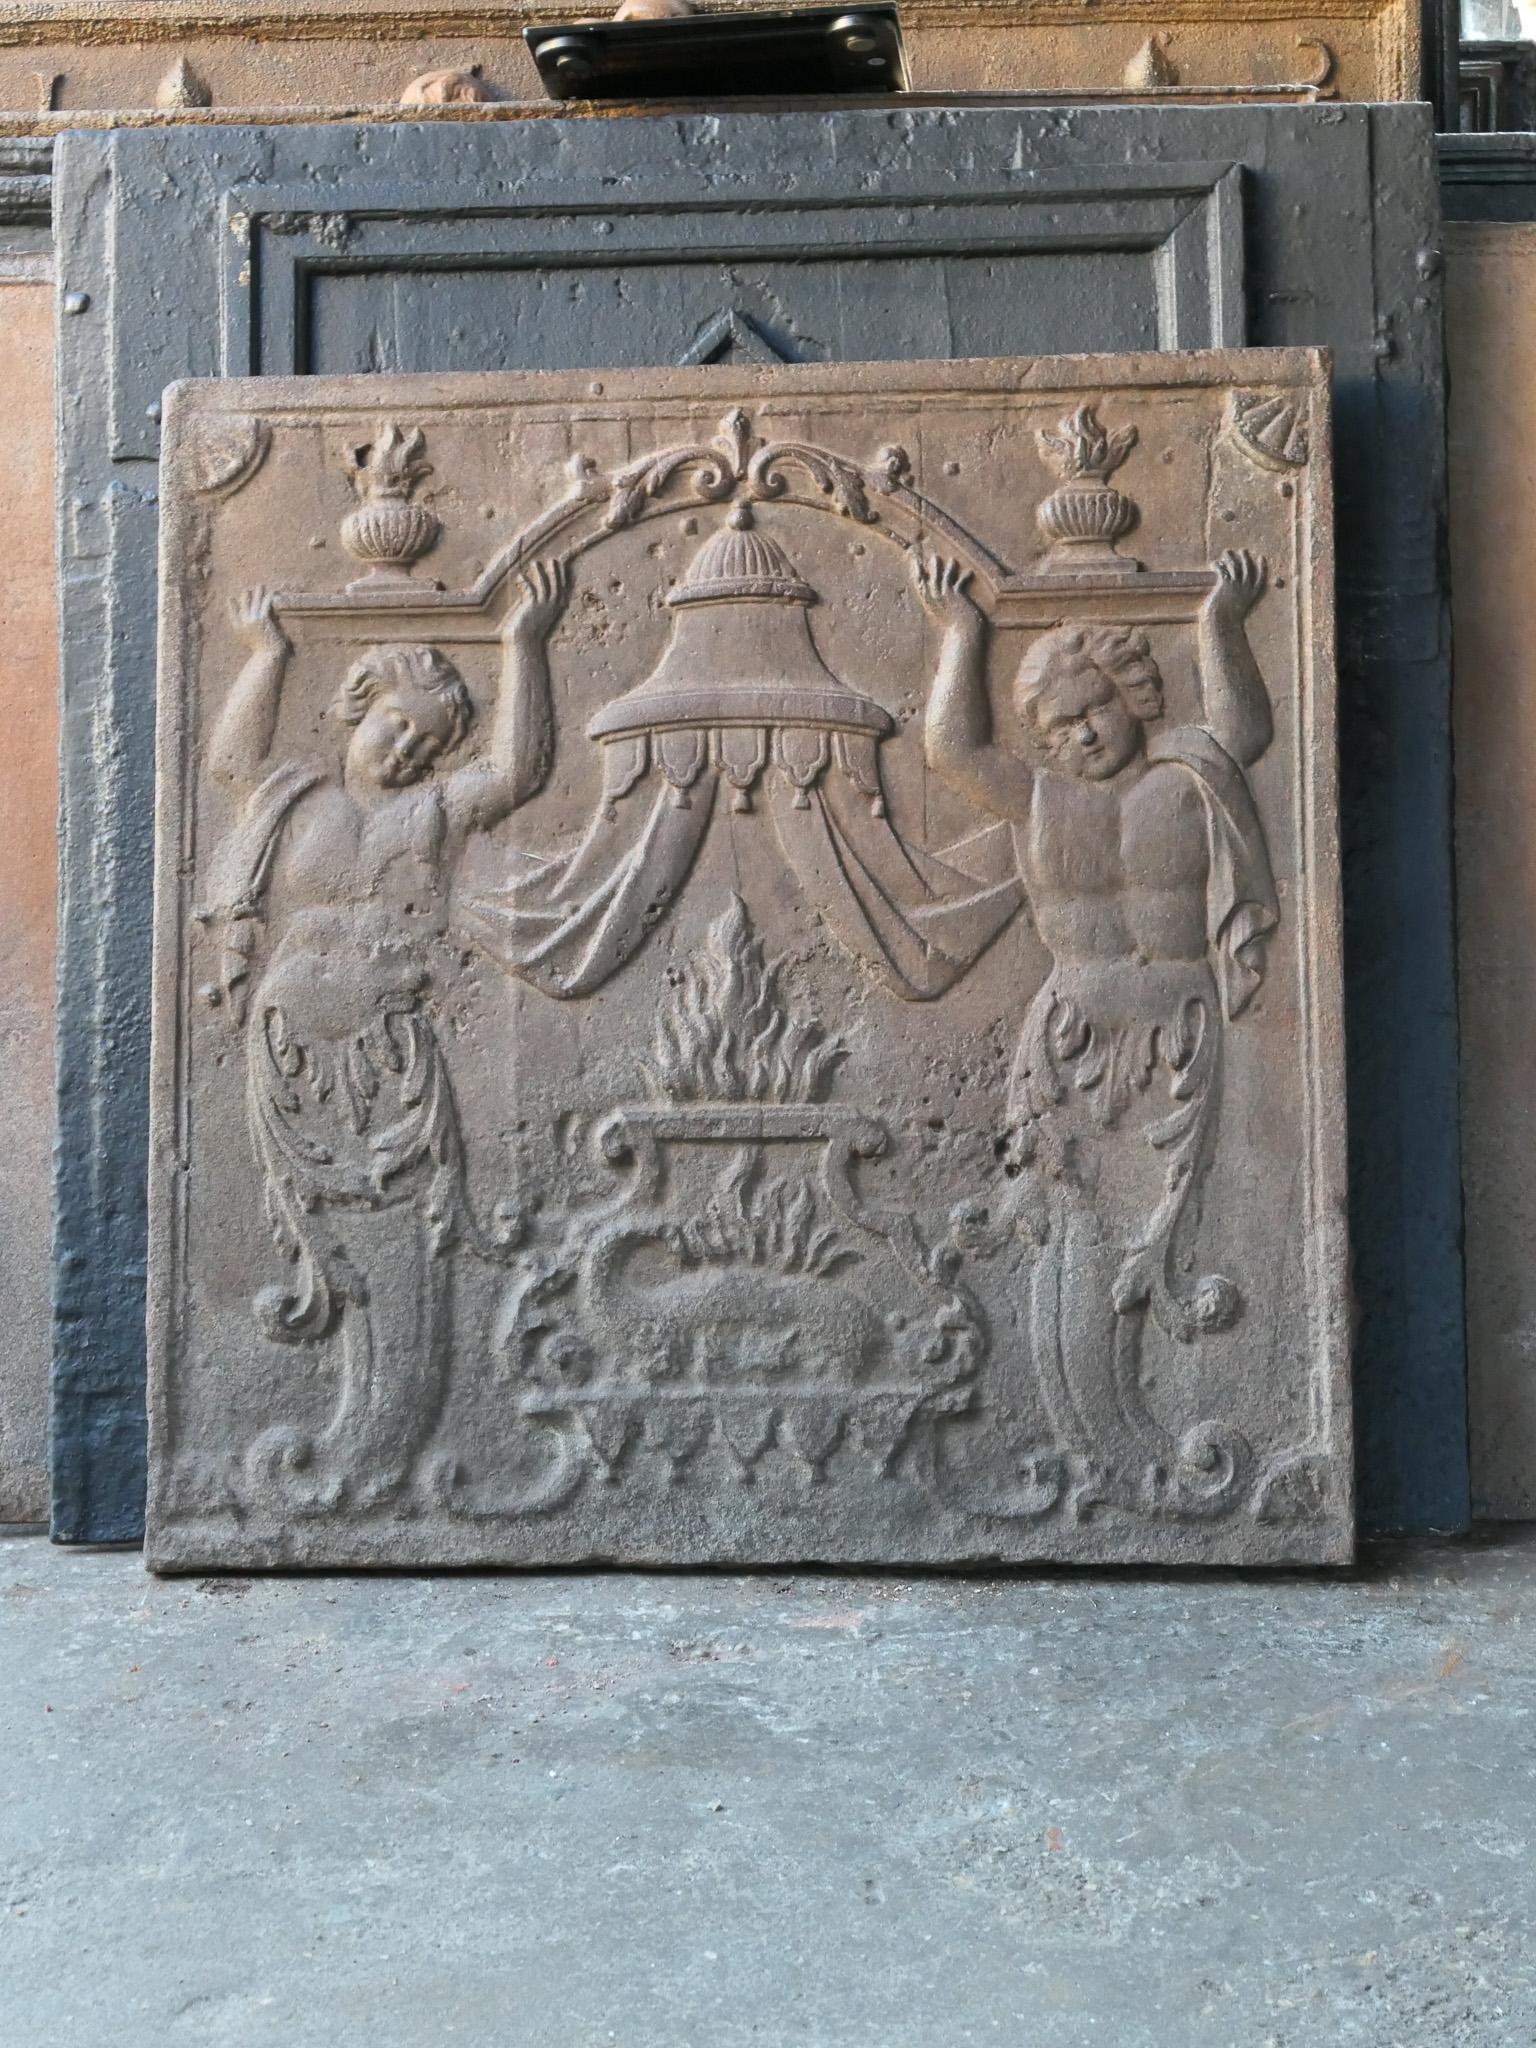 La salamandre était le symbole de François Ier, roi de France au XVIe siècle. 

La plaque de cheminée présente une patine naturelle brune. Sur demande, la plaque de cheminée peut être rendue noire sans frais supplémentaires. 

Il est en bon état et